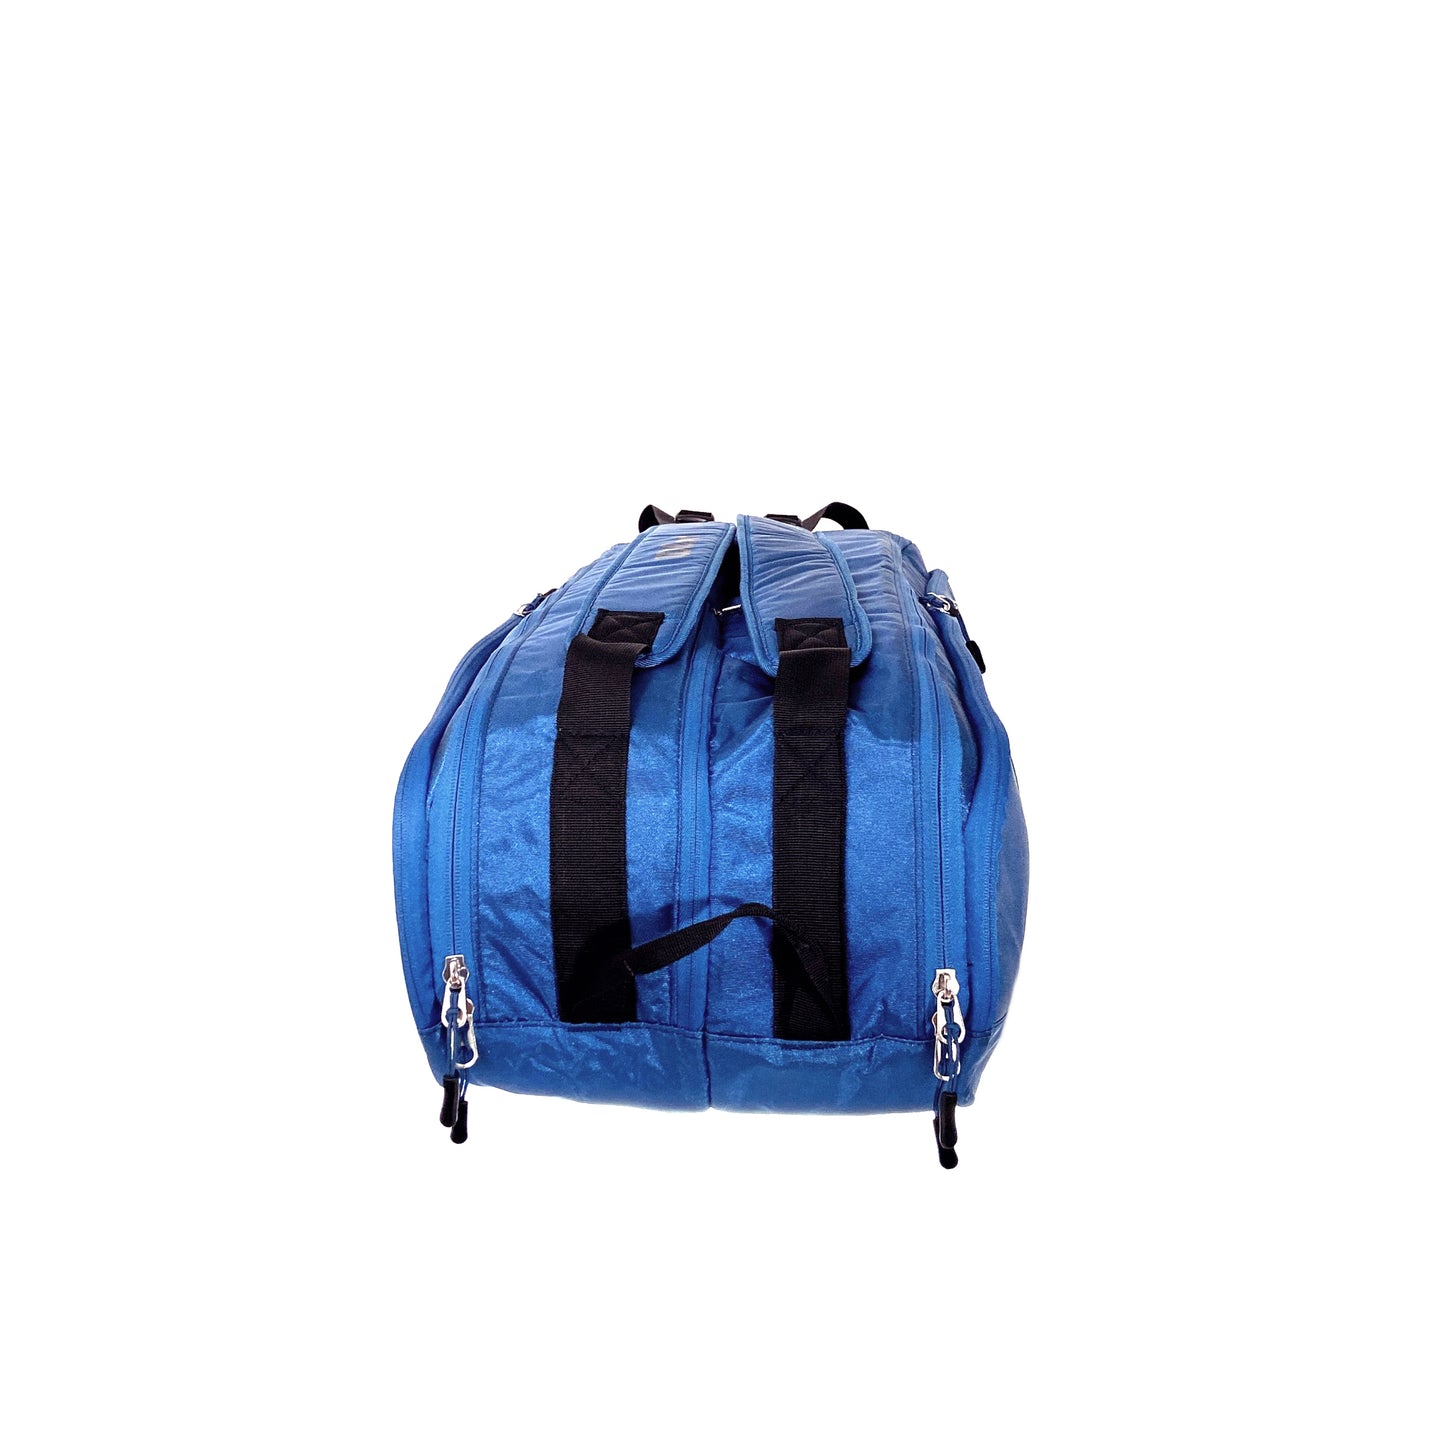 Wilson Tour Ultra 12PK Racket Bag Blue (WR8024001)